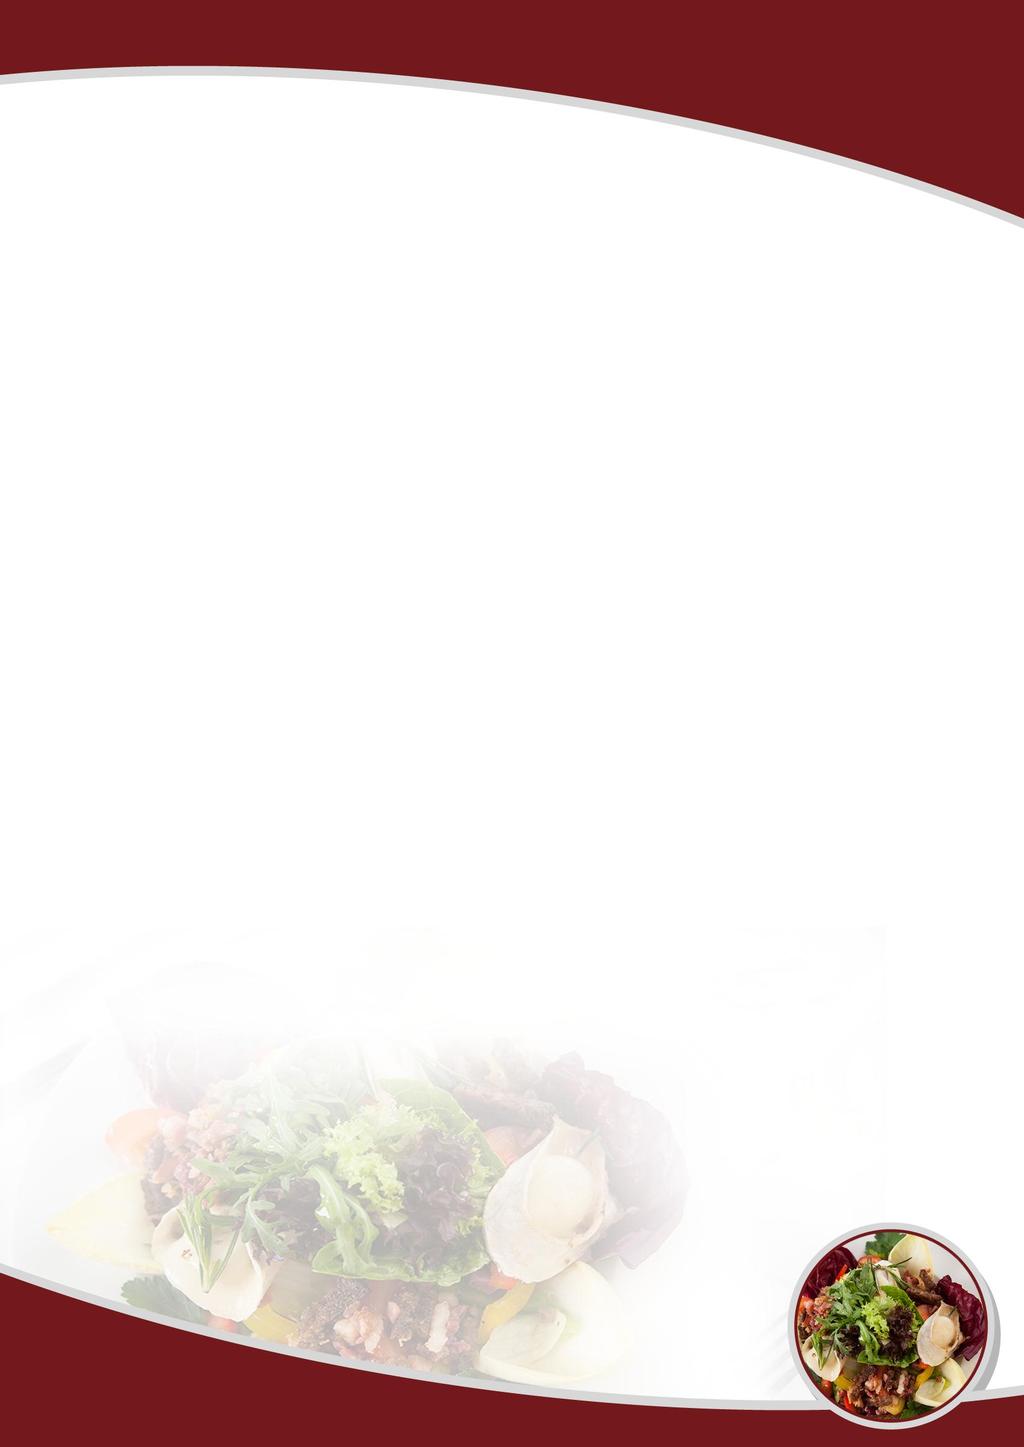 Vegetarisch auf den Tisch Backkartoffel mit Kräuter-Sauerrahm 5,90 Schwenkgemüse der Saison mit cremigem Kräuter-Sauerrahm Bandnudeln mit Pilzen 8,50 in Sahnesauce dazu geriebener Parmesan